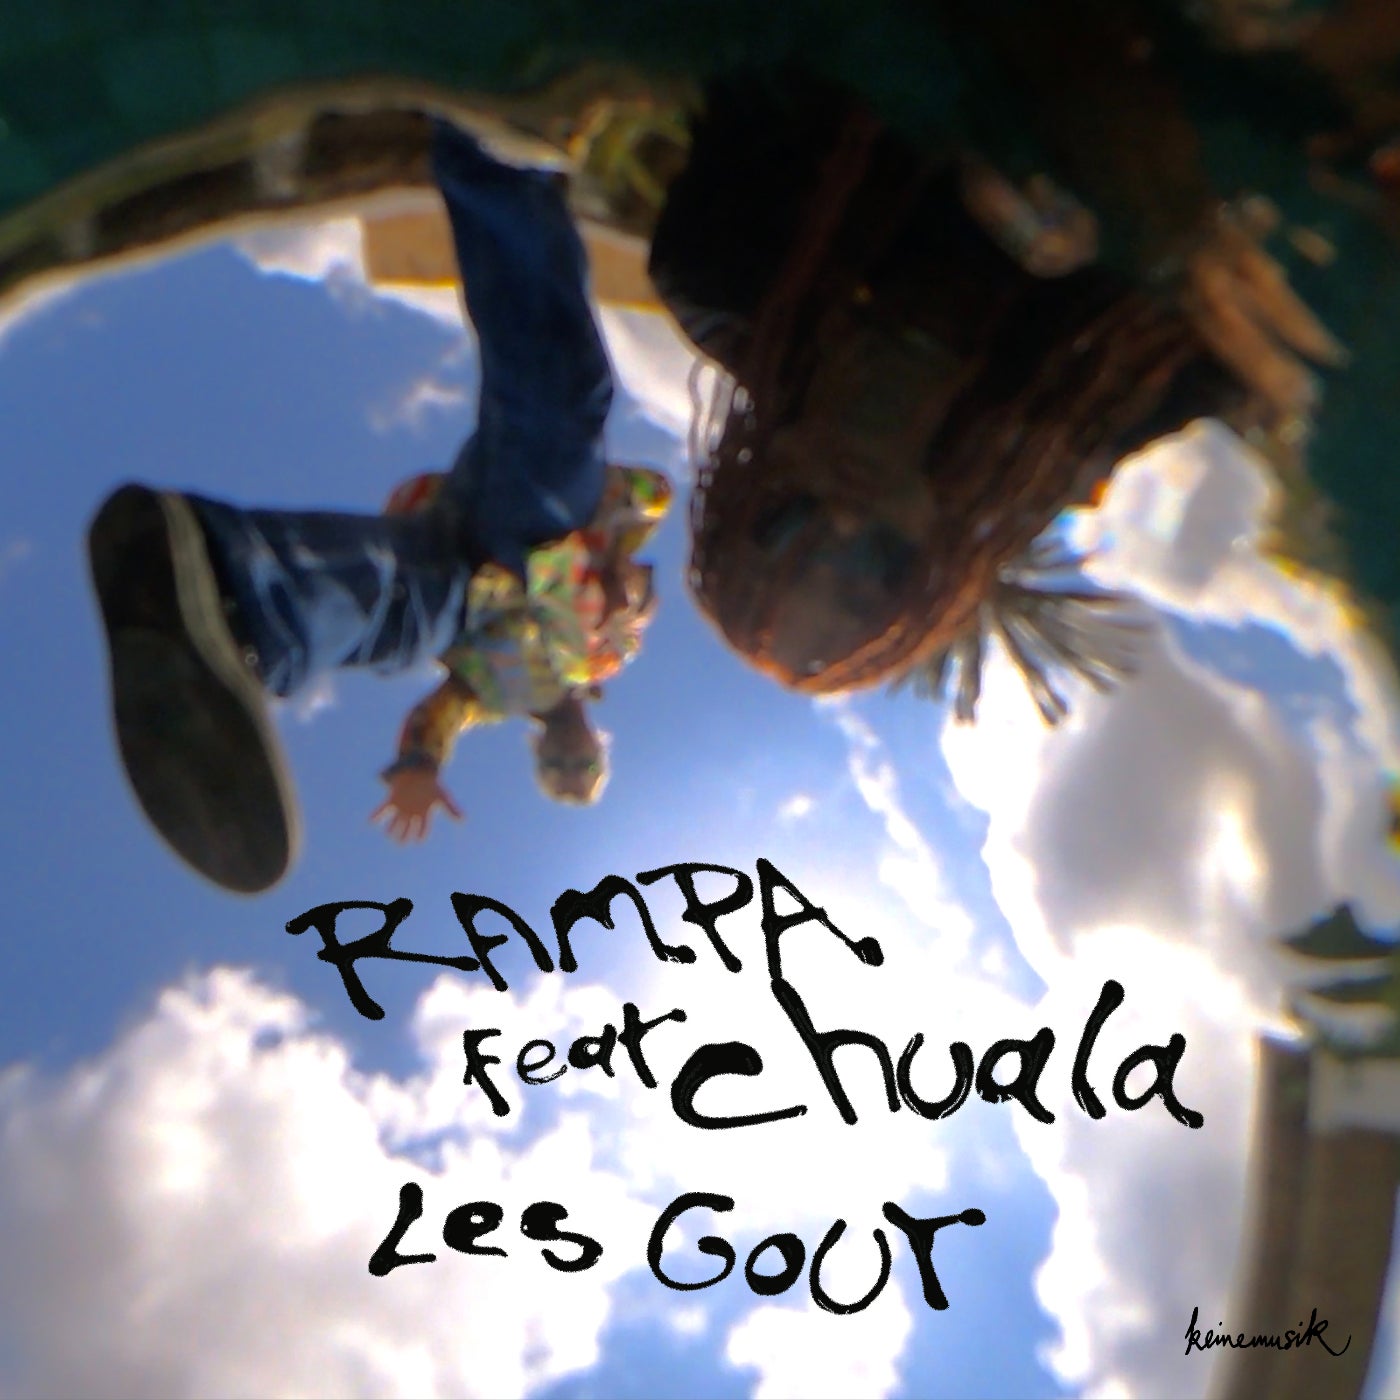 Les Gout (Original Mix)